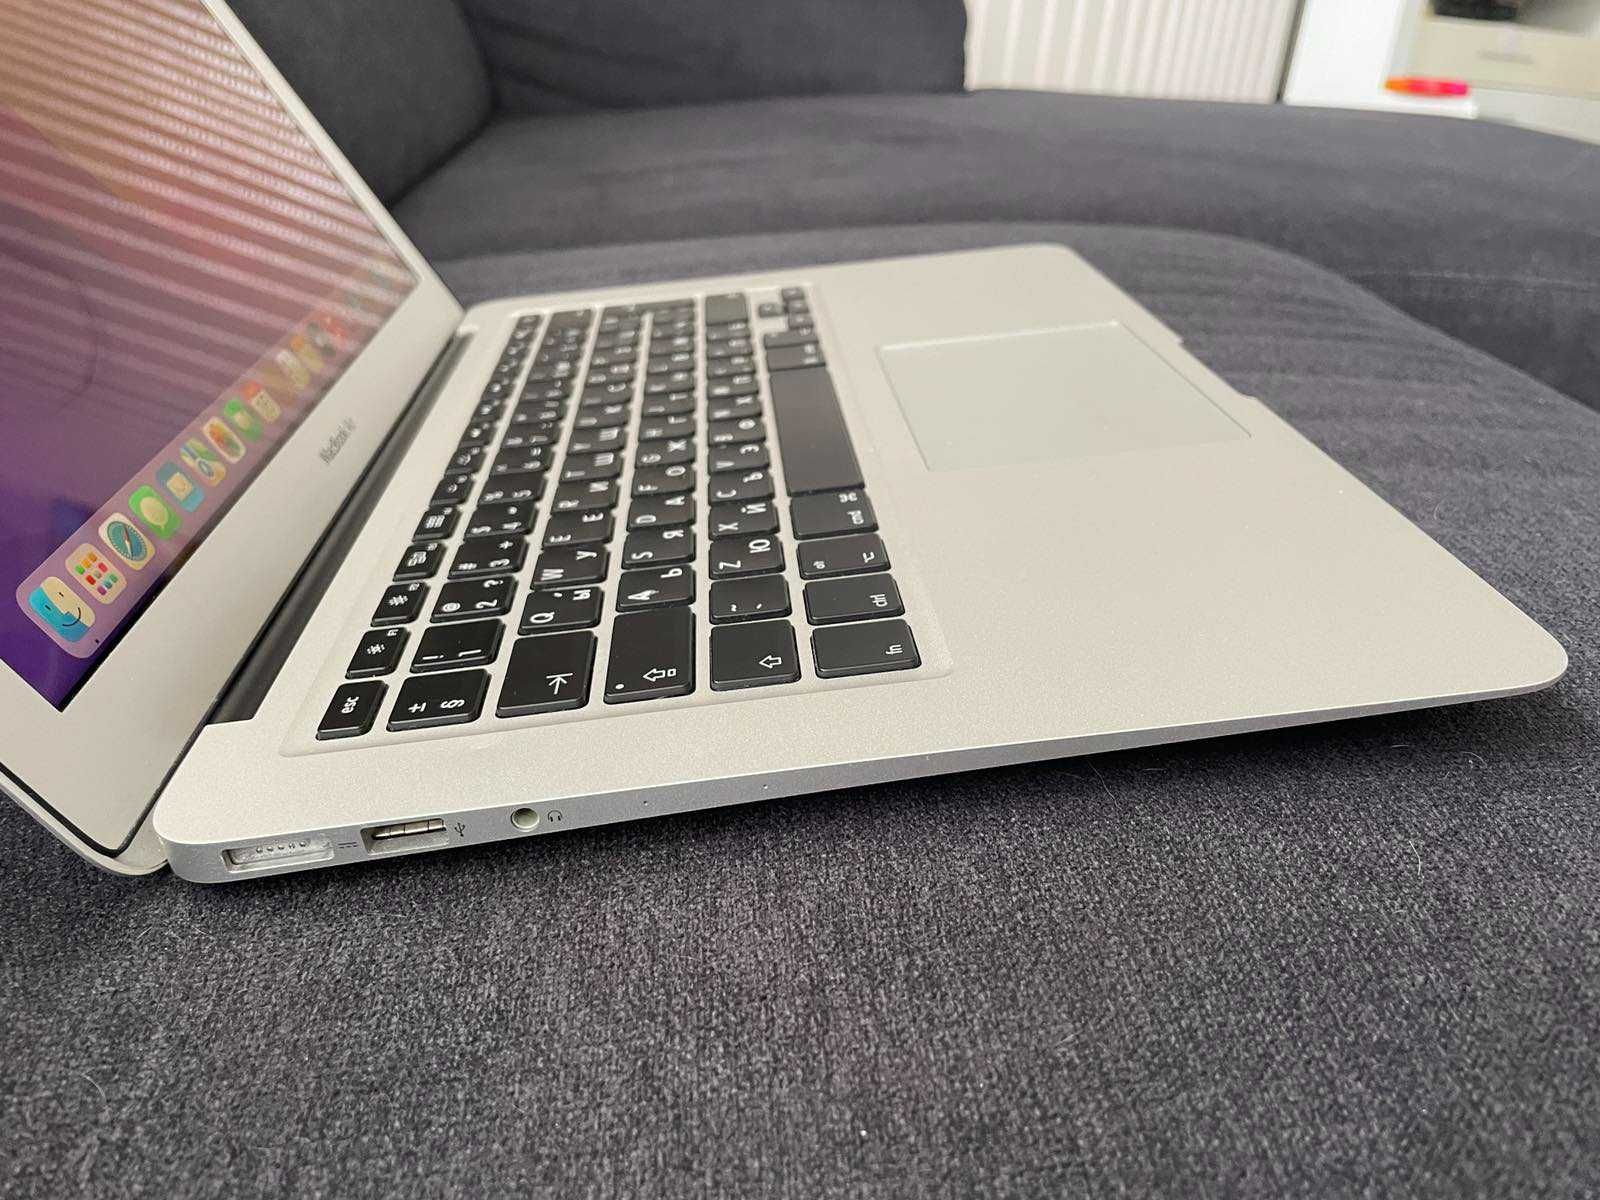 MacBook Аir 13" Еarly 2015 1'6 GHz Intel Core i5, 4 GB RAM